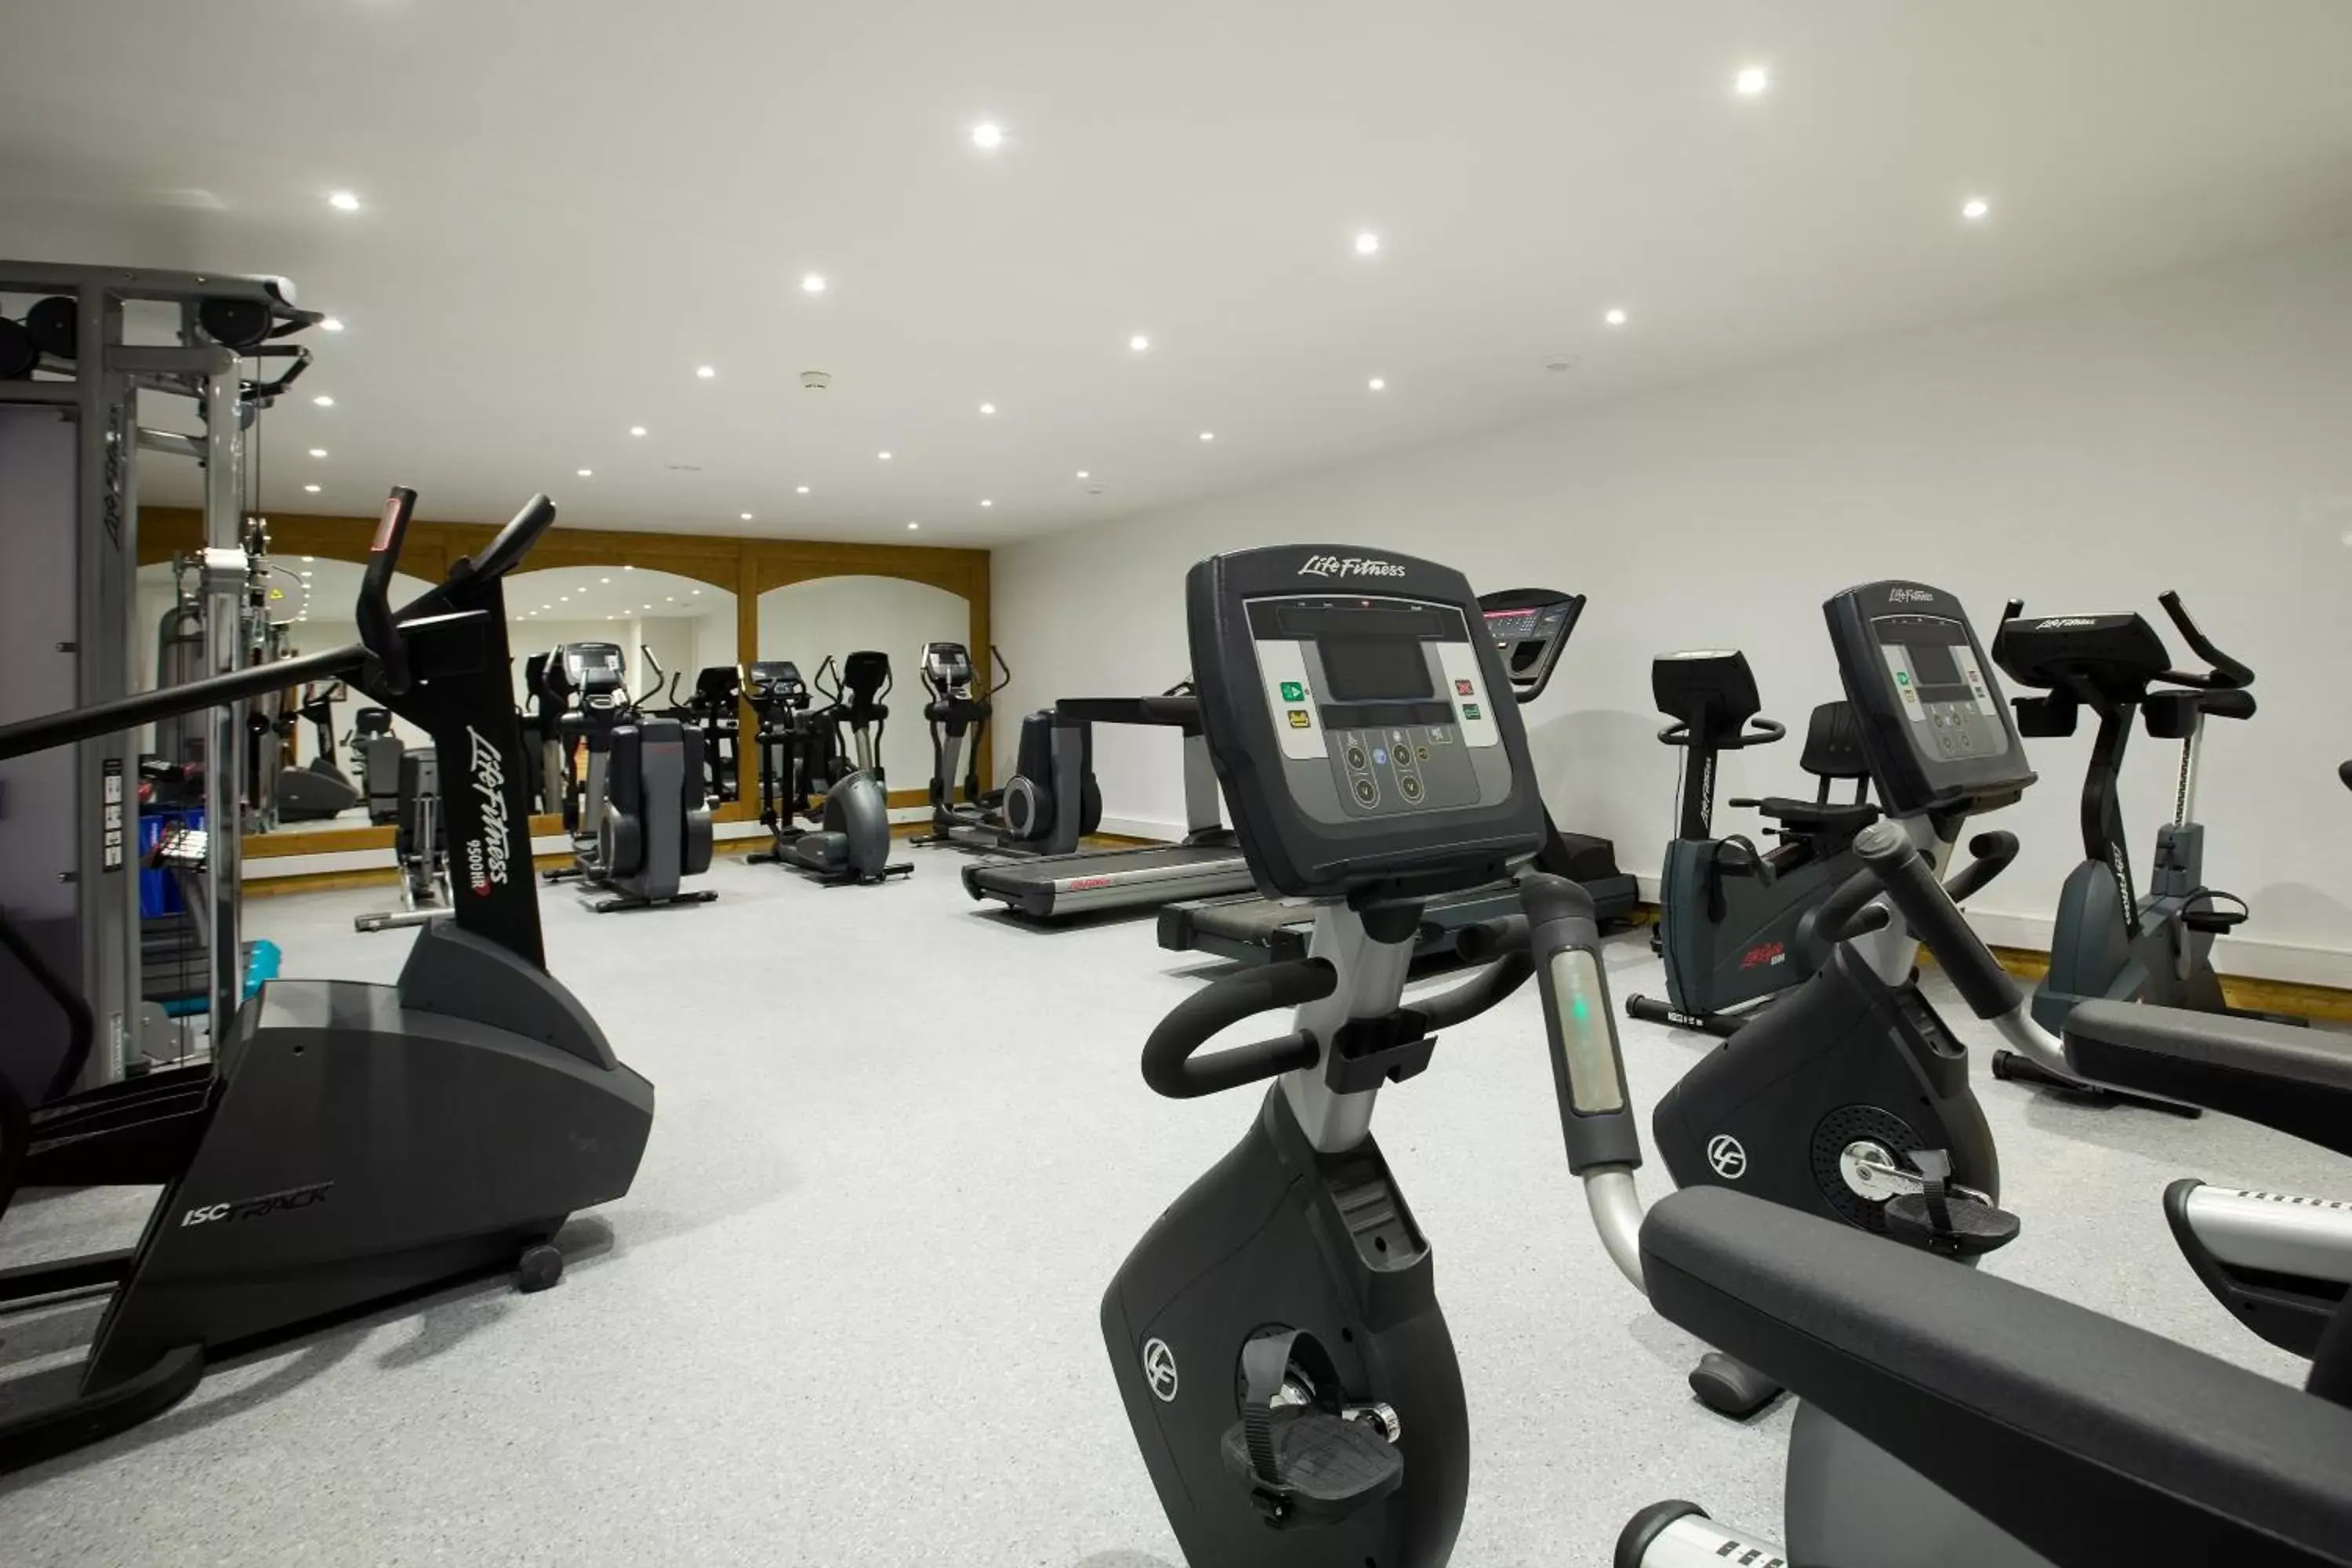 Fitness centre/facilities, Fitness Center/Facilities in Hotel La Chaudanne